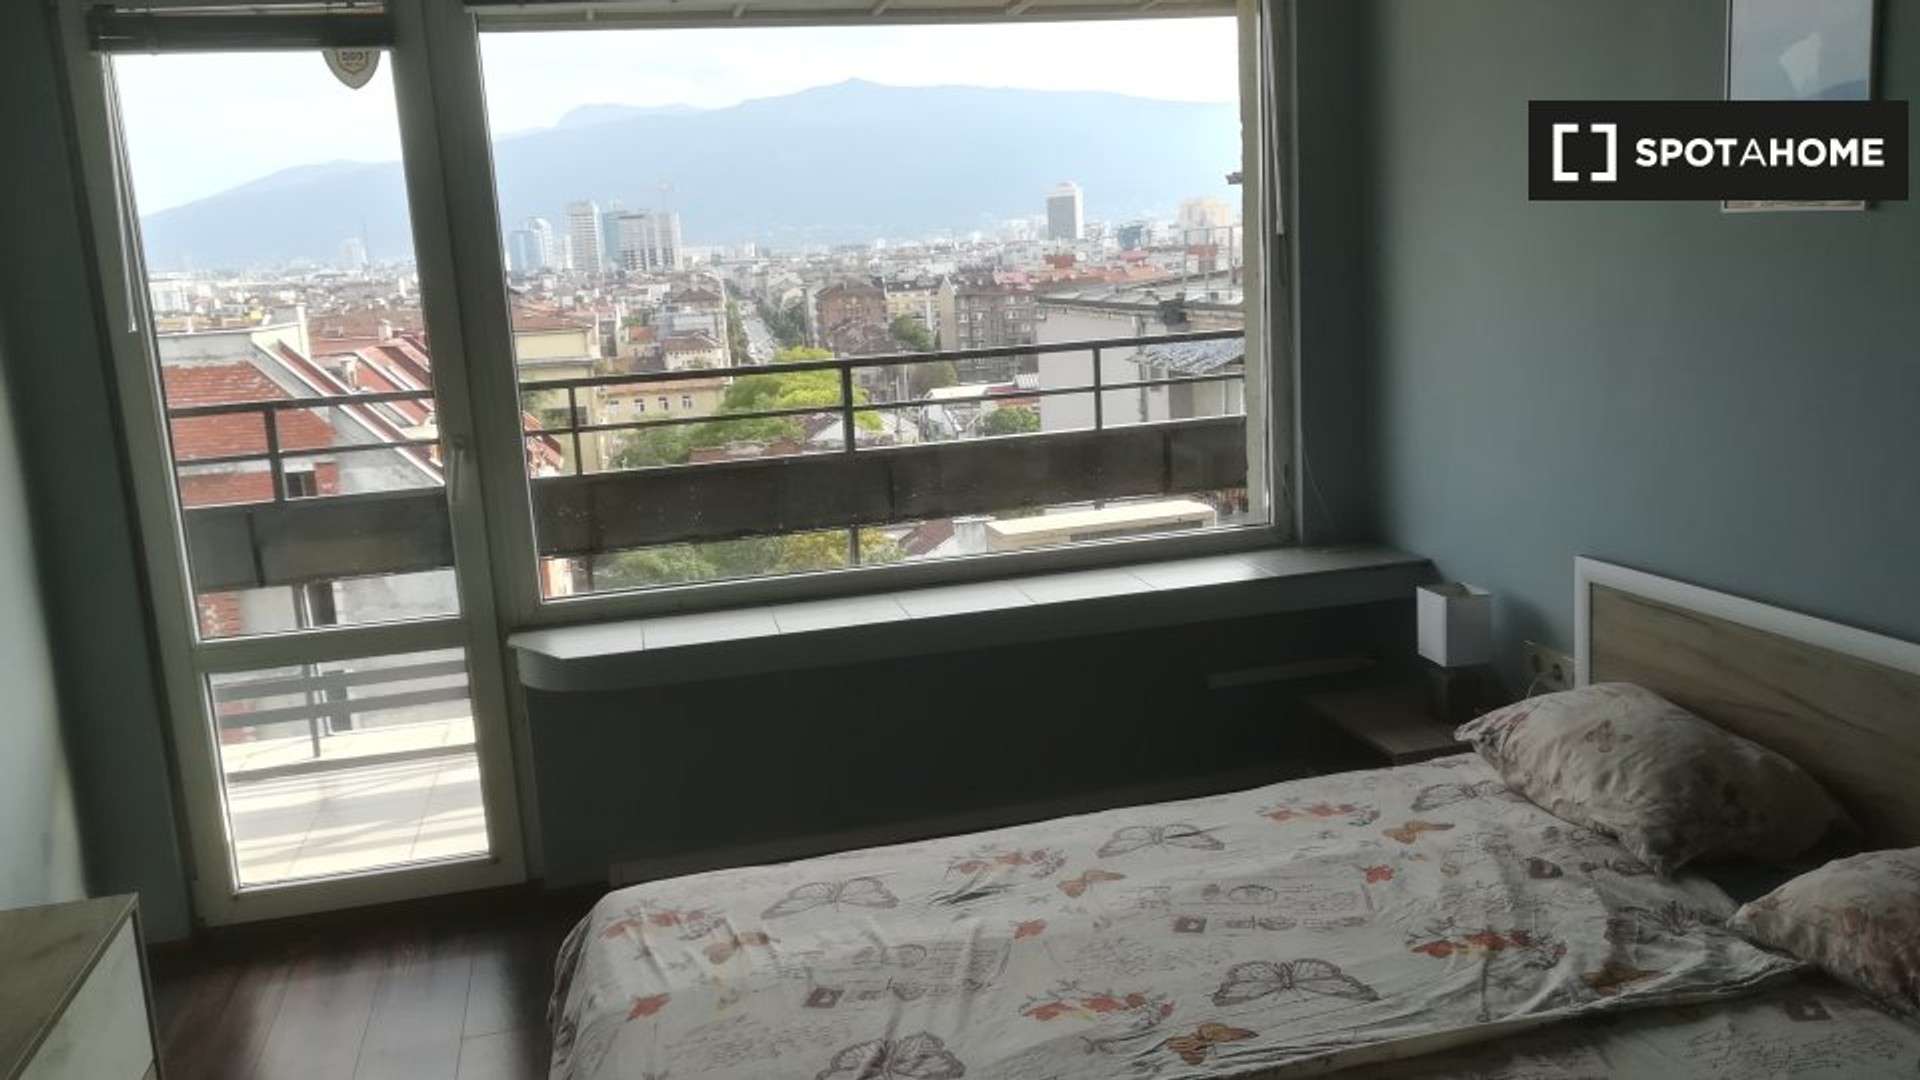 Alquiler de habitación en piso compartido en Sofía